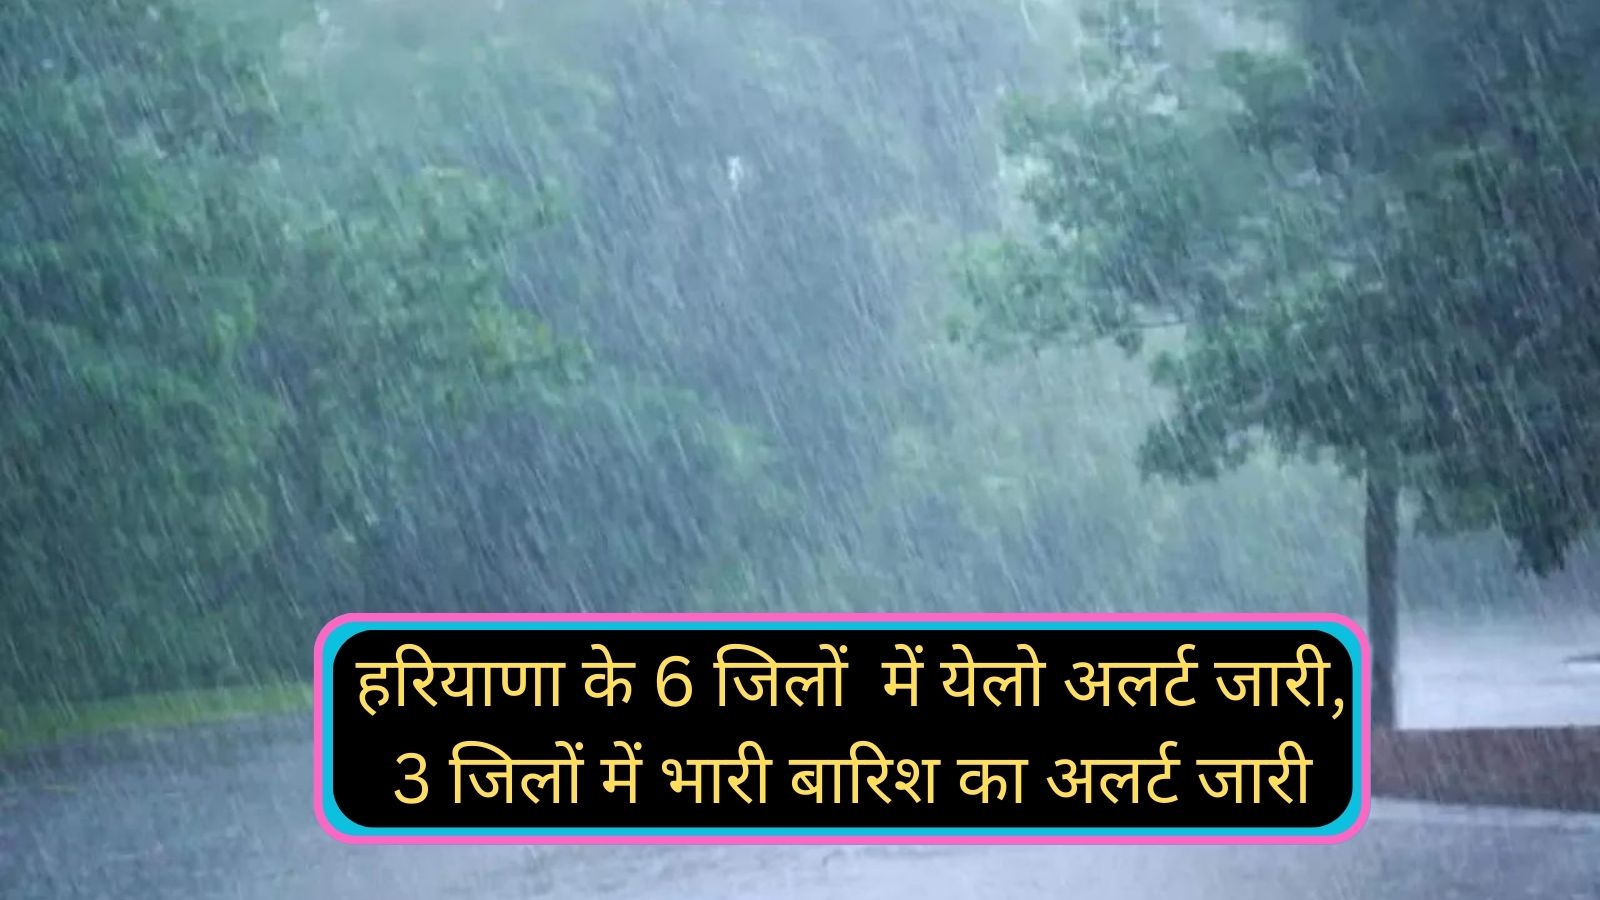 Haryana Weather Alert: हरियाणा के 6 जिलों में येलो अलर्ट जारी, 3 जिलों में भारी बारिश का अलर्ट जारी,